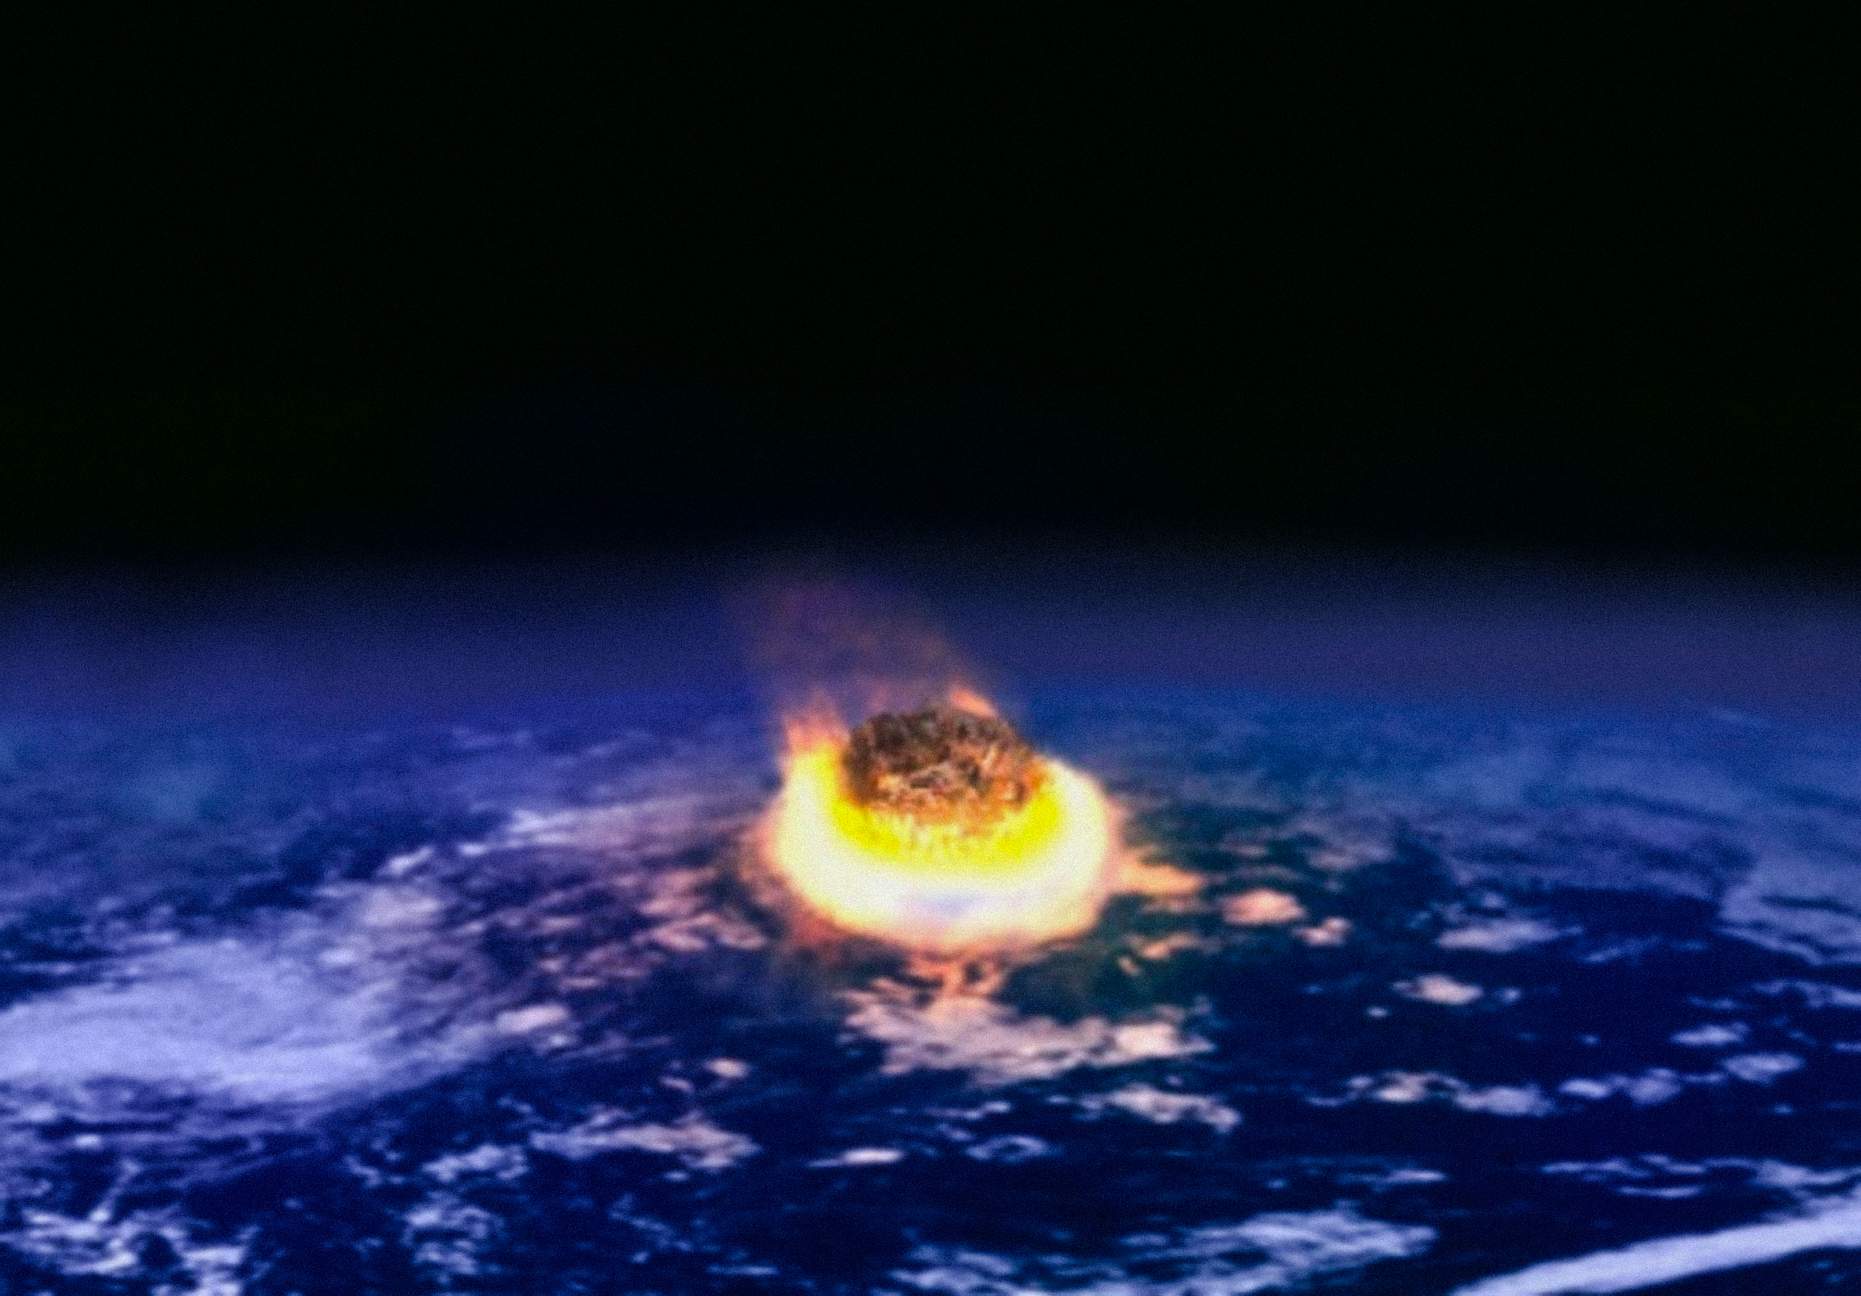 Para Zoltan Galántai, una escala que clasifique a las civilizaciones debería basarse en su capacidad para sobrevivir a catástrofes, en particular aquellas de origen cósmico, como el impacto de un asteroide.